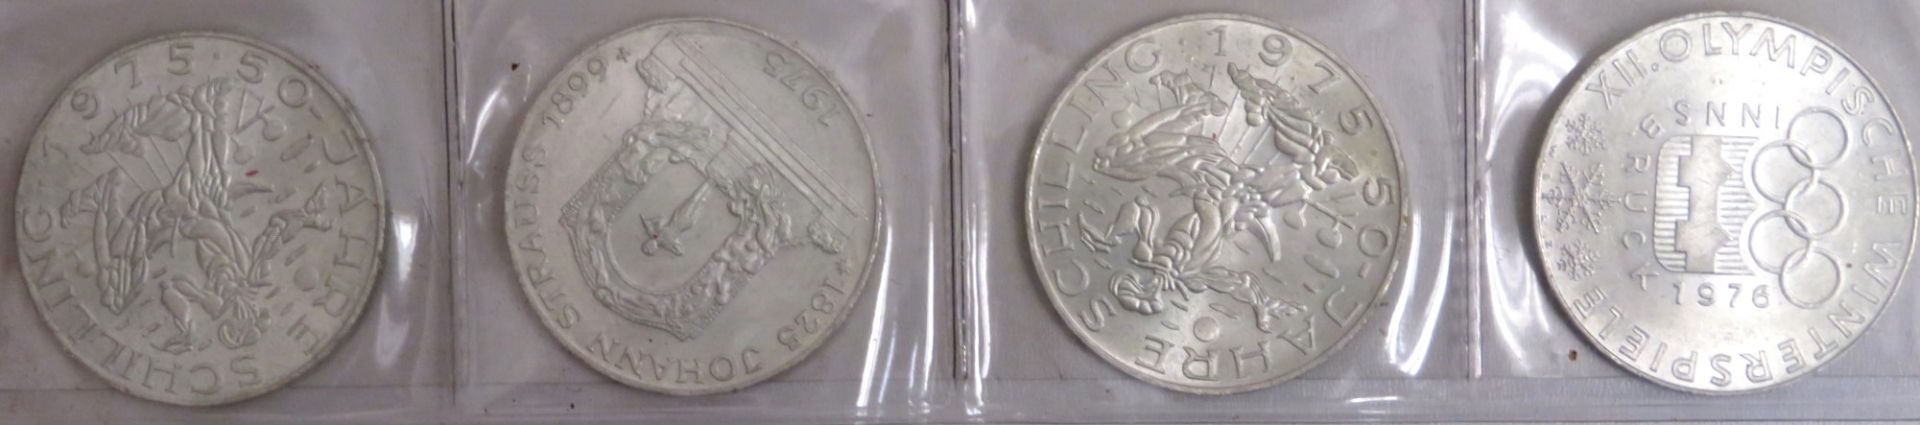 4 Silbermünzen, Österreich, 100 Schilling, 1975/1976, Silber 640/000, je 24 g, Feinsilber zus. 61 g - Image 2 of 2